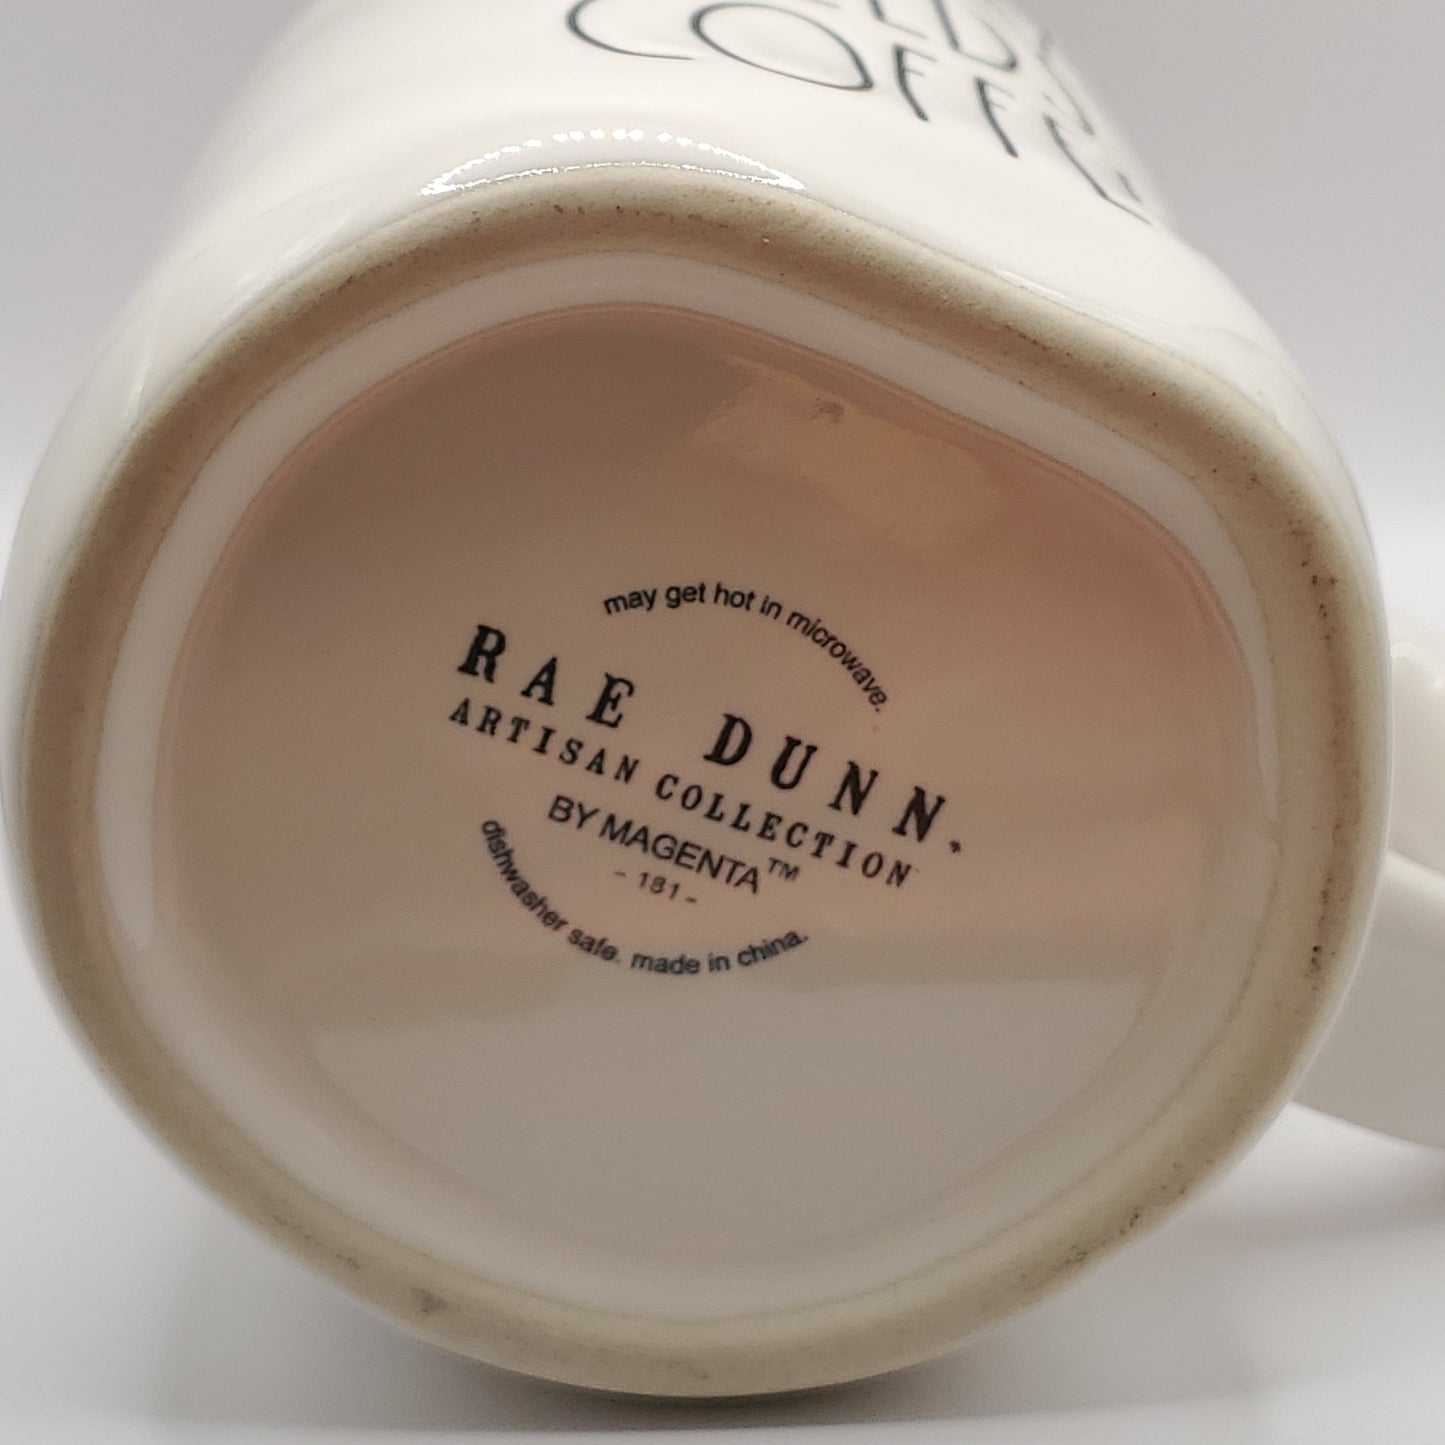 Rae Dunn Mama Needs Coffee Mug